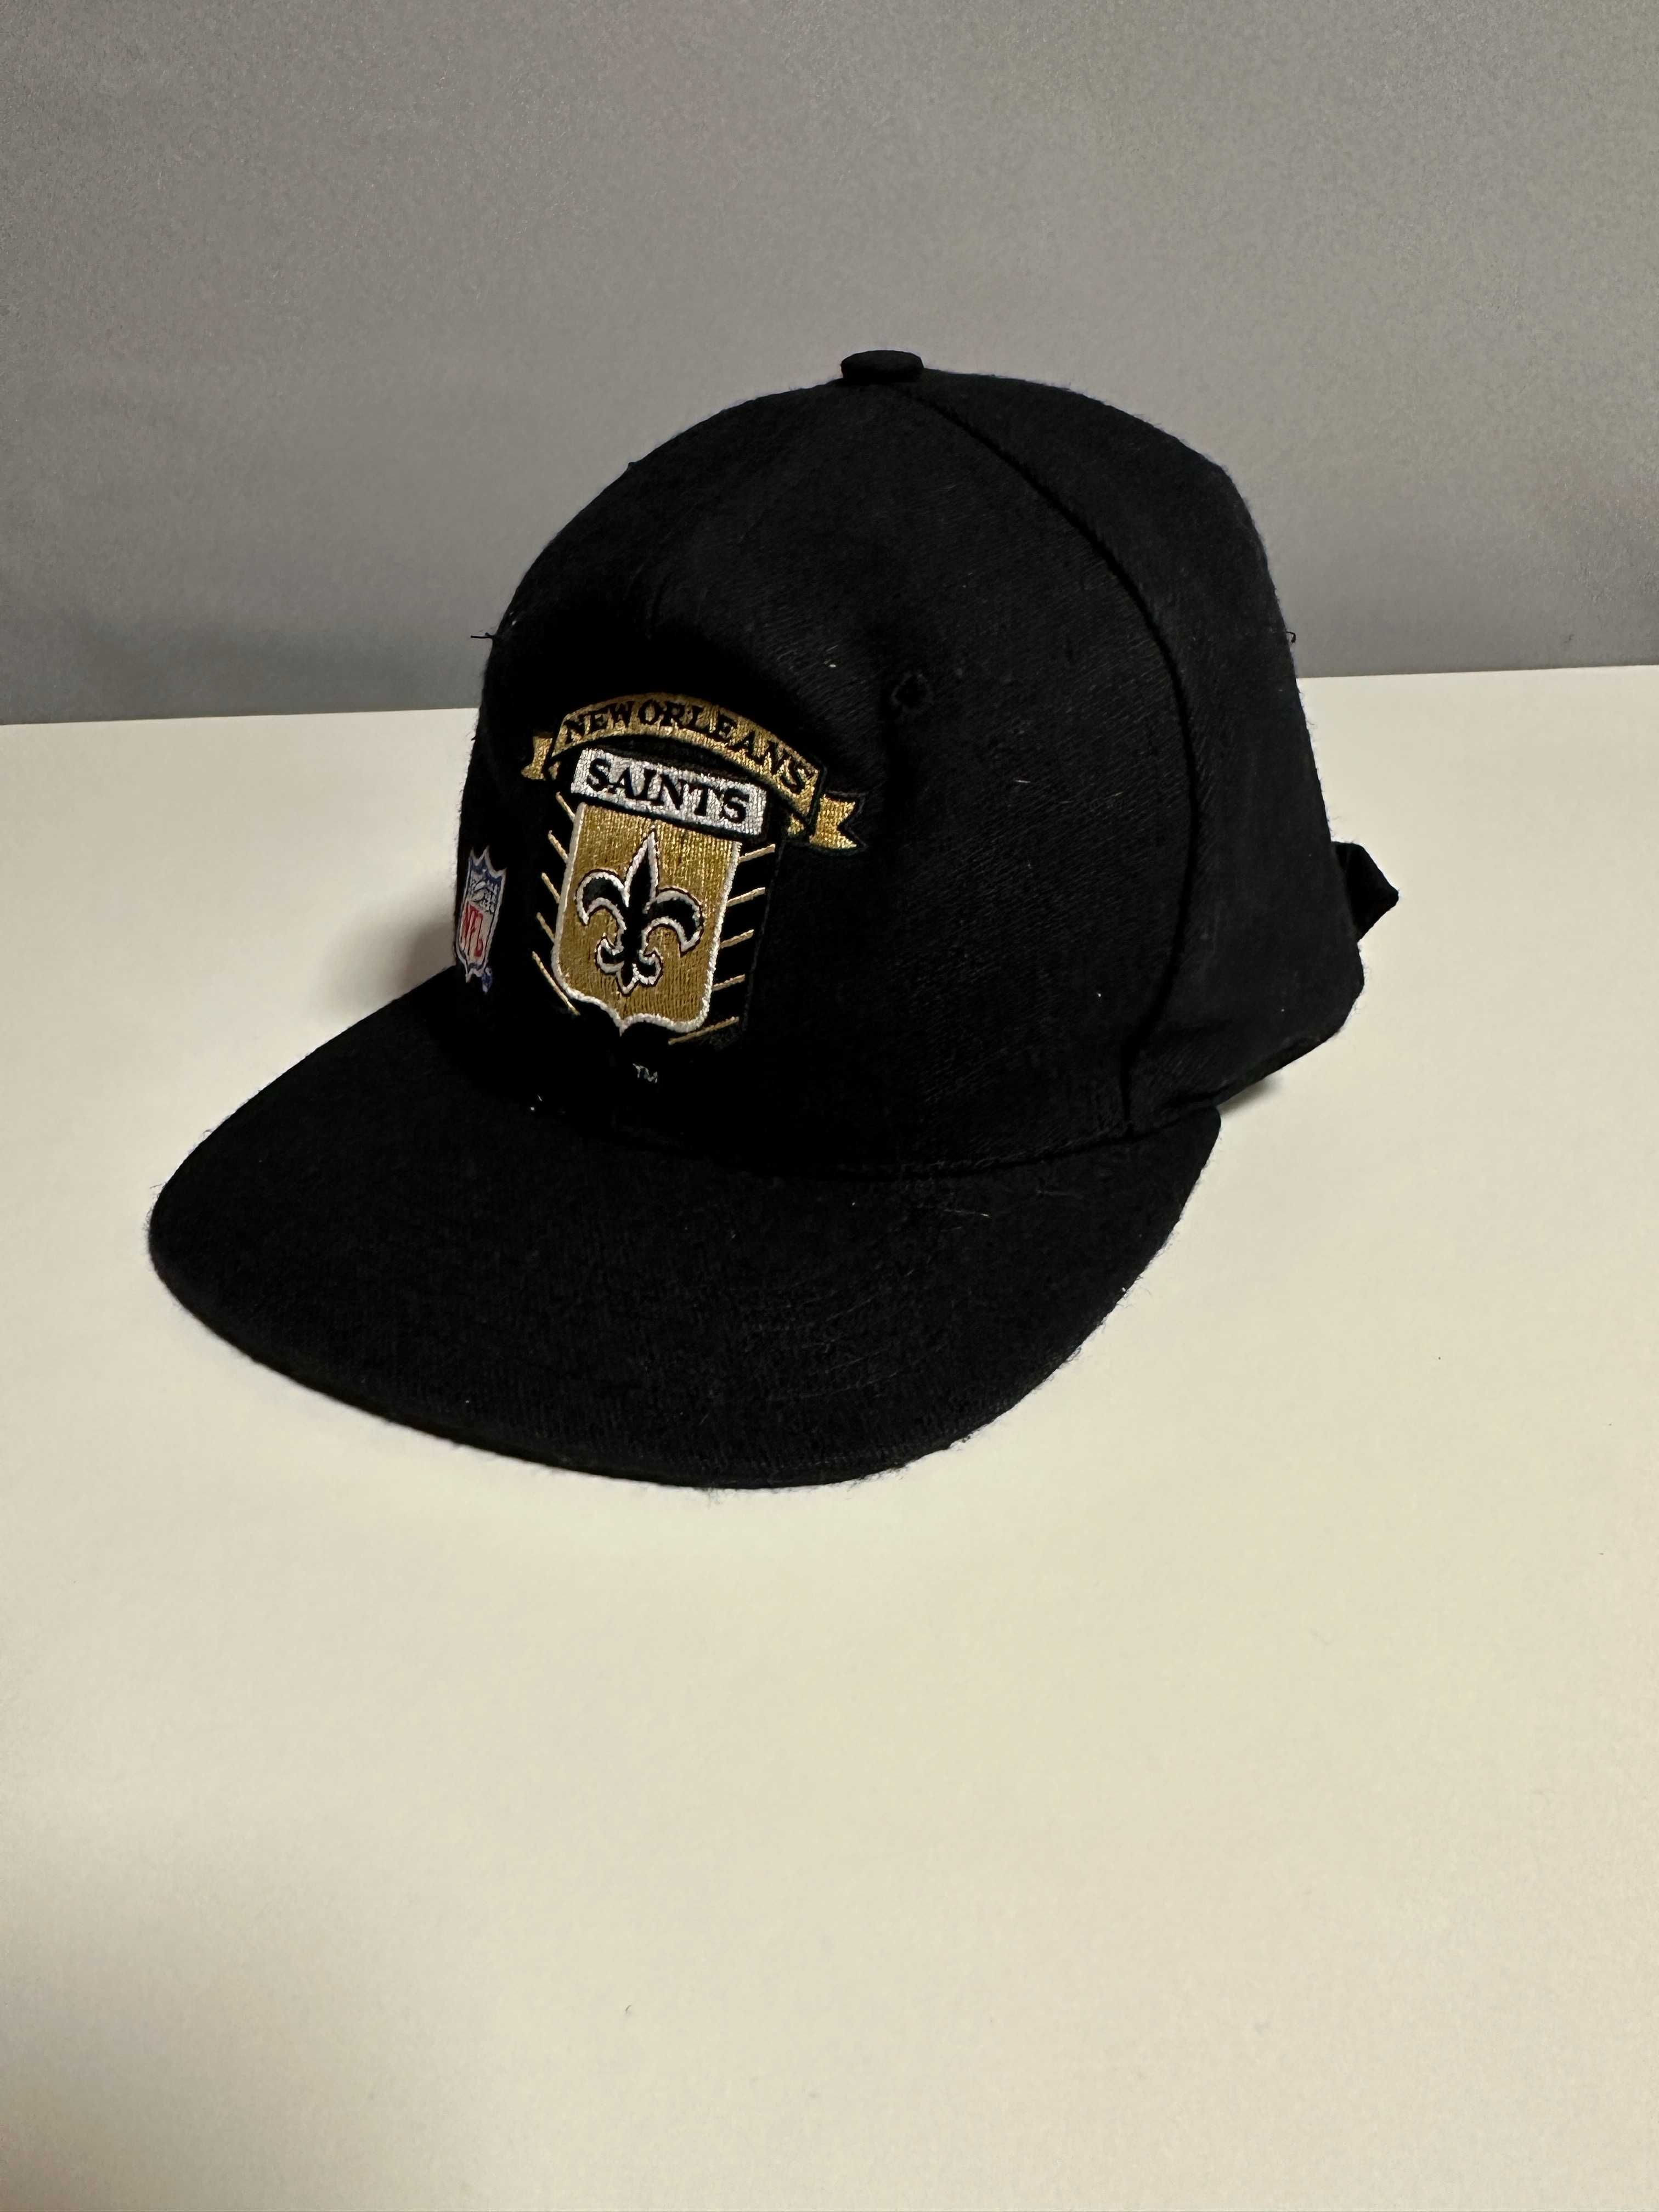 Sapca barbati unisex New Orleans Saints vintage 1992 lana neagra